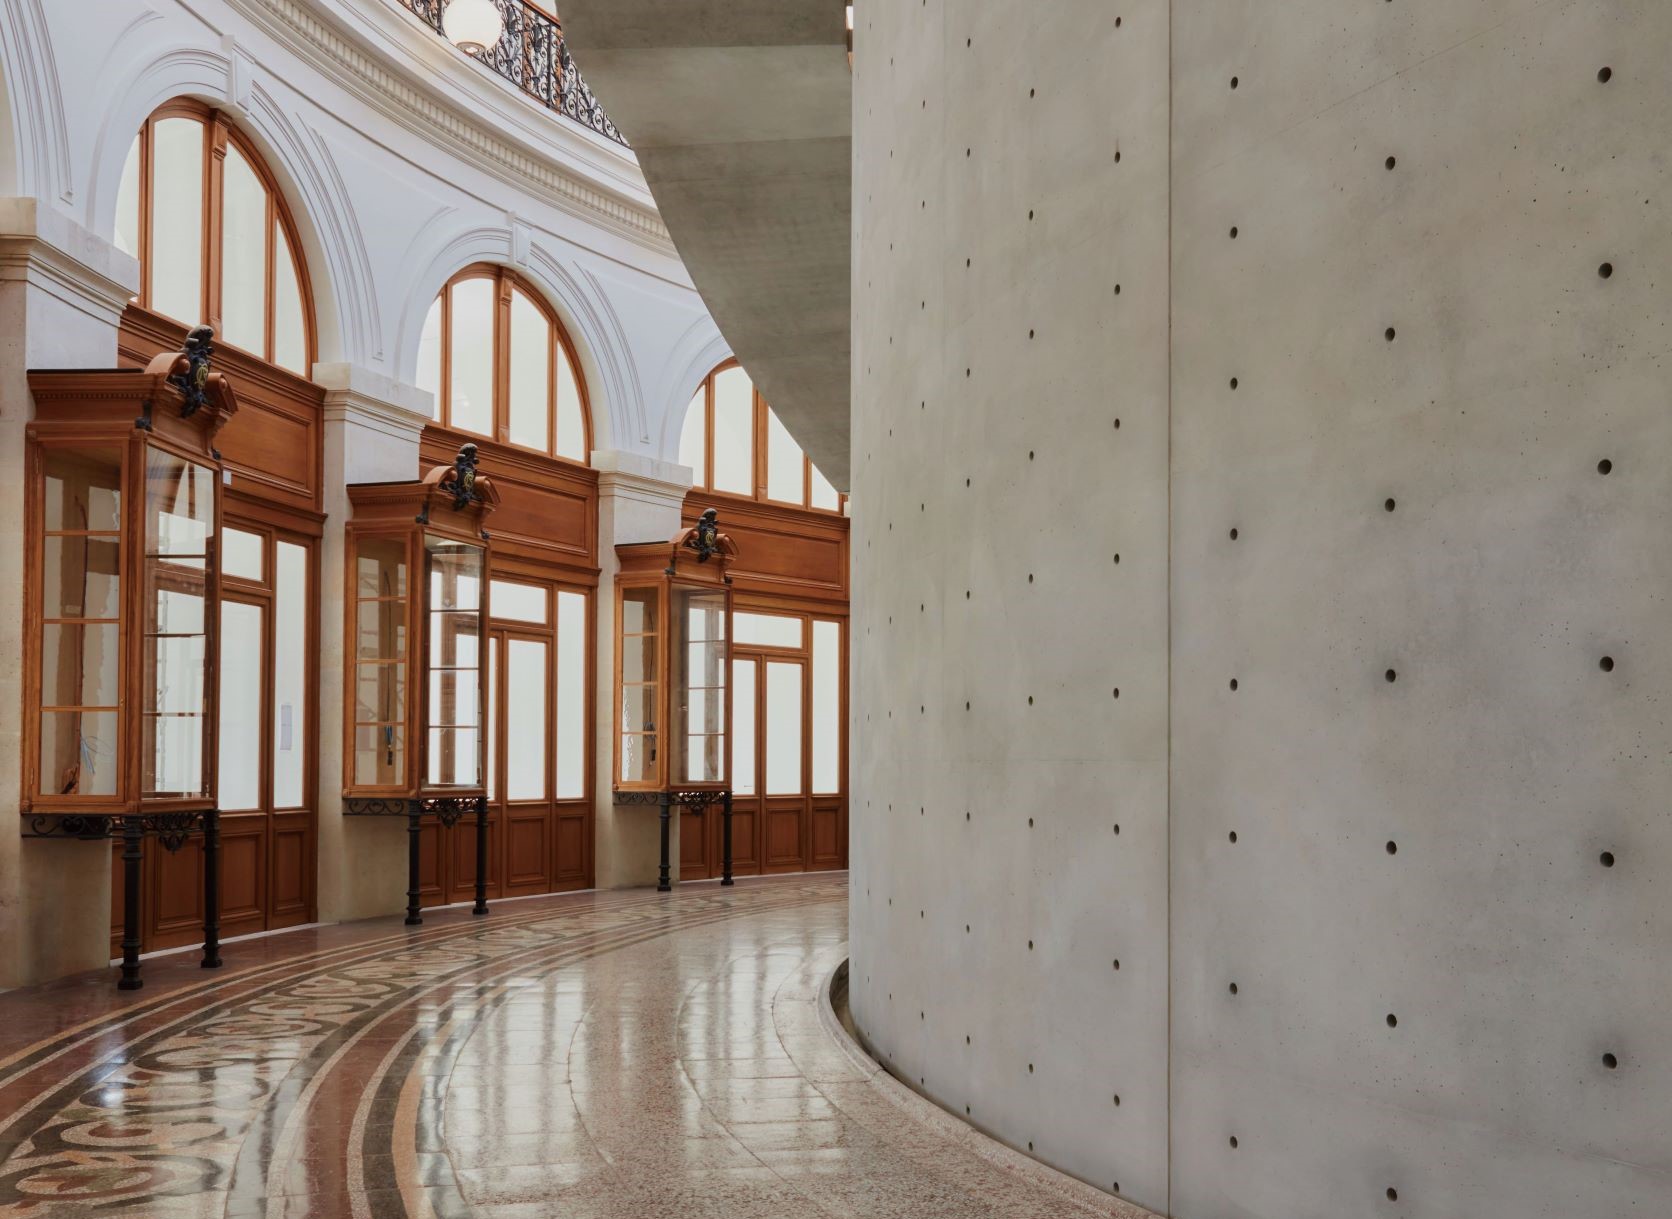 高 9 公尺的圆柱式清水模结构，以极简素雅之美对应原建筑的巴洛克风情。 ( © Maxime Tétard, Studio Les Graphiquants, Paris )